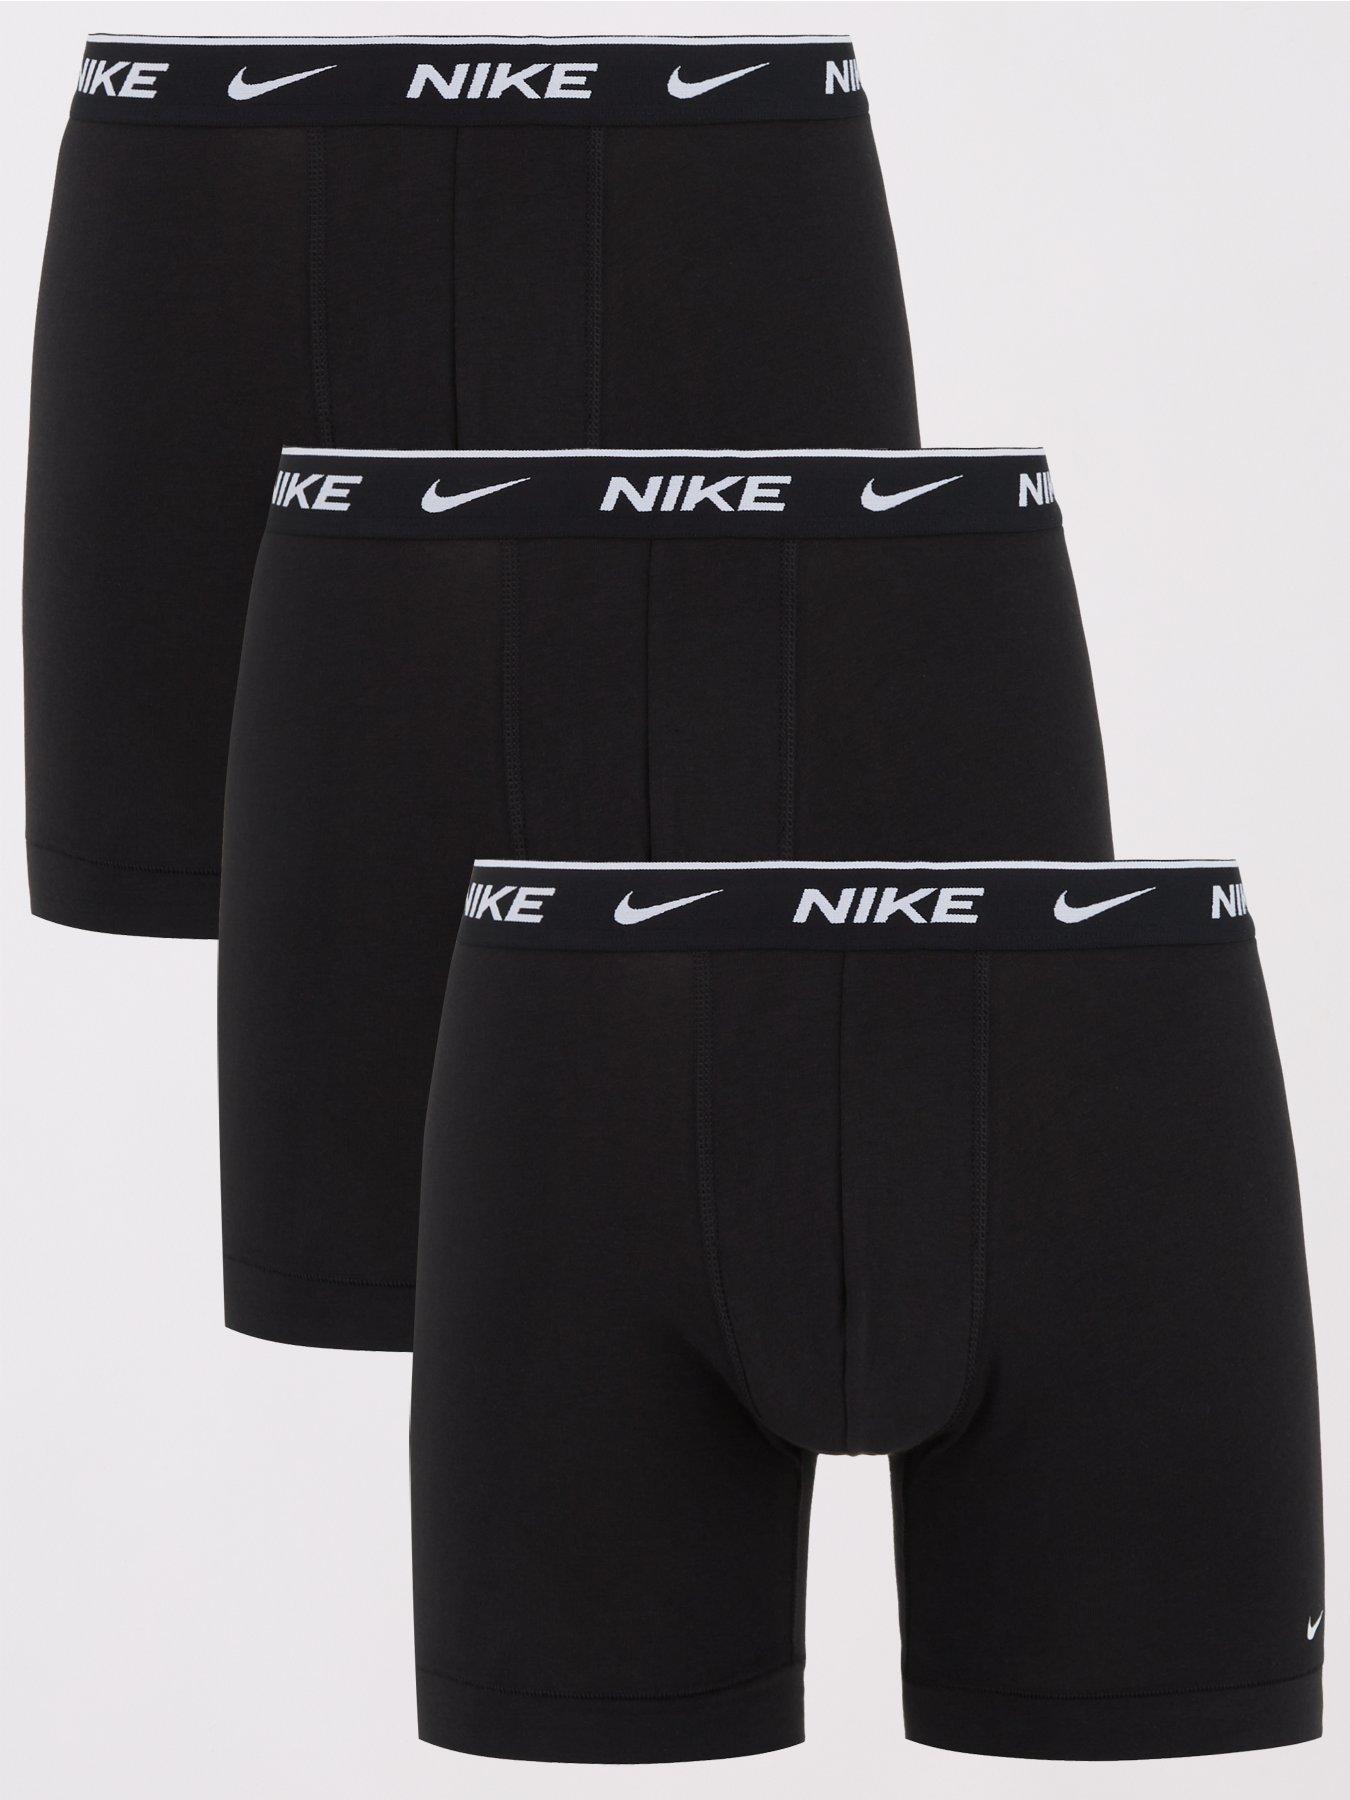 NIKE Underwear Brief 3pk - Briefs 